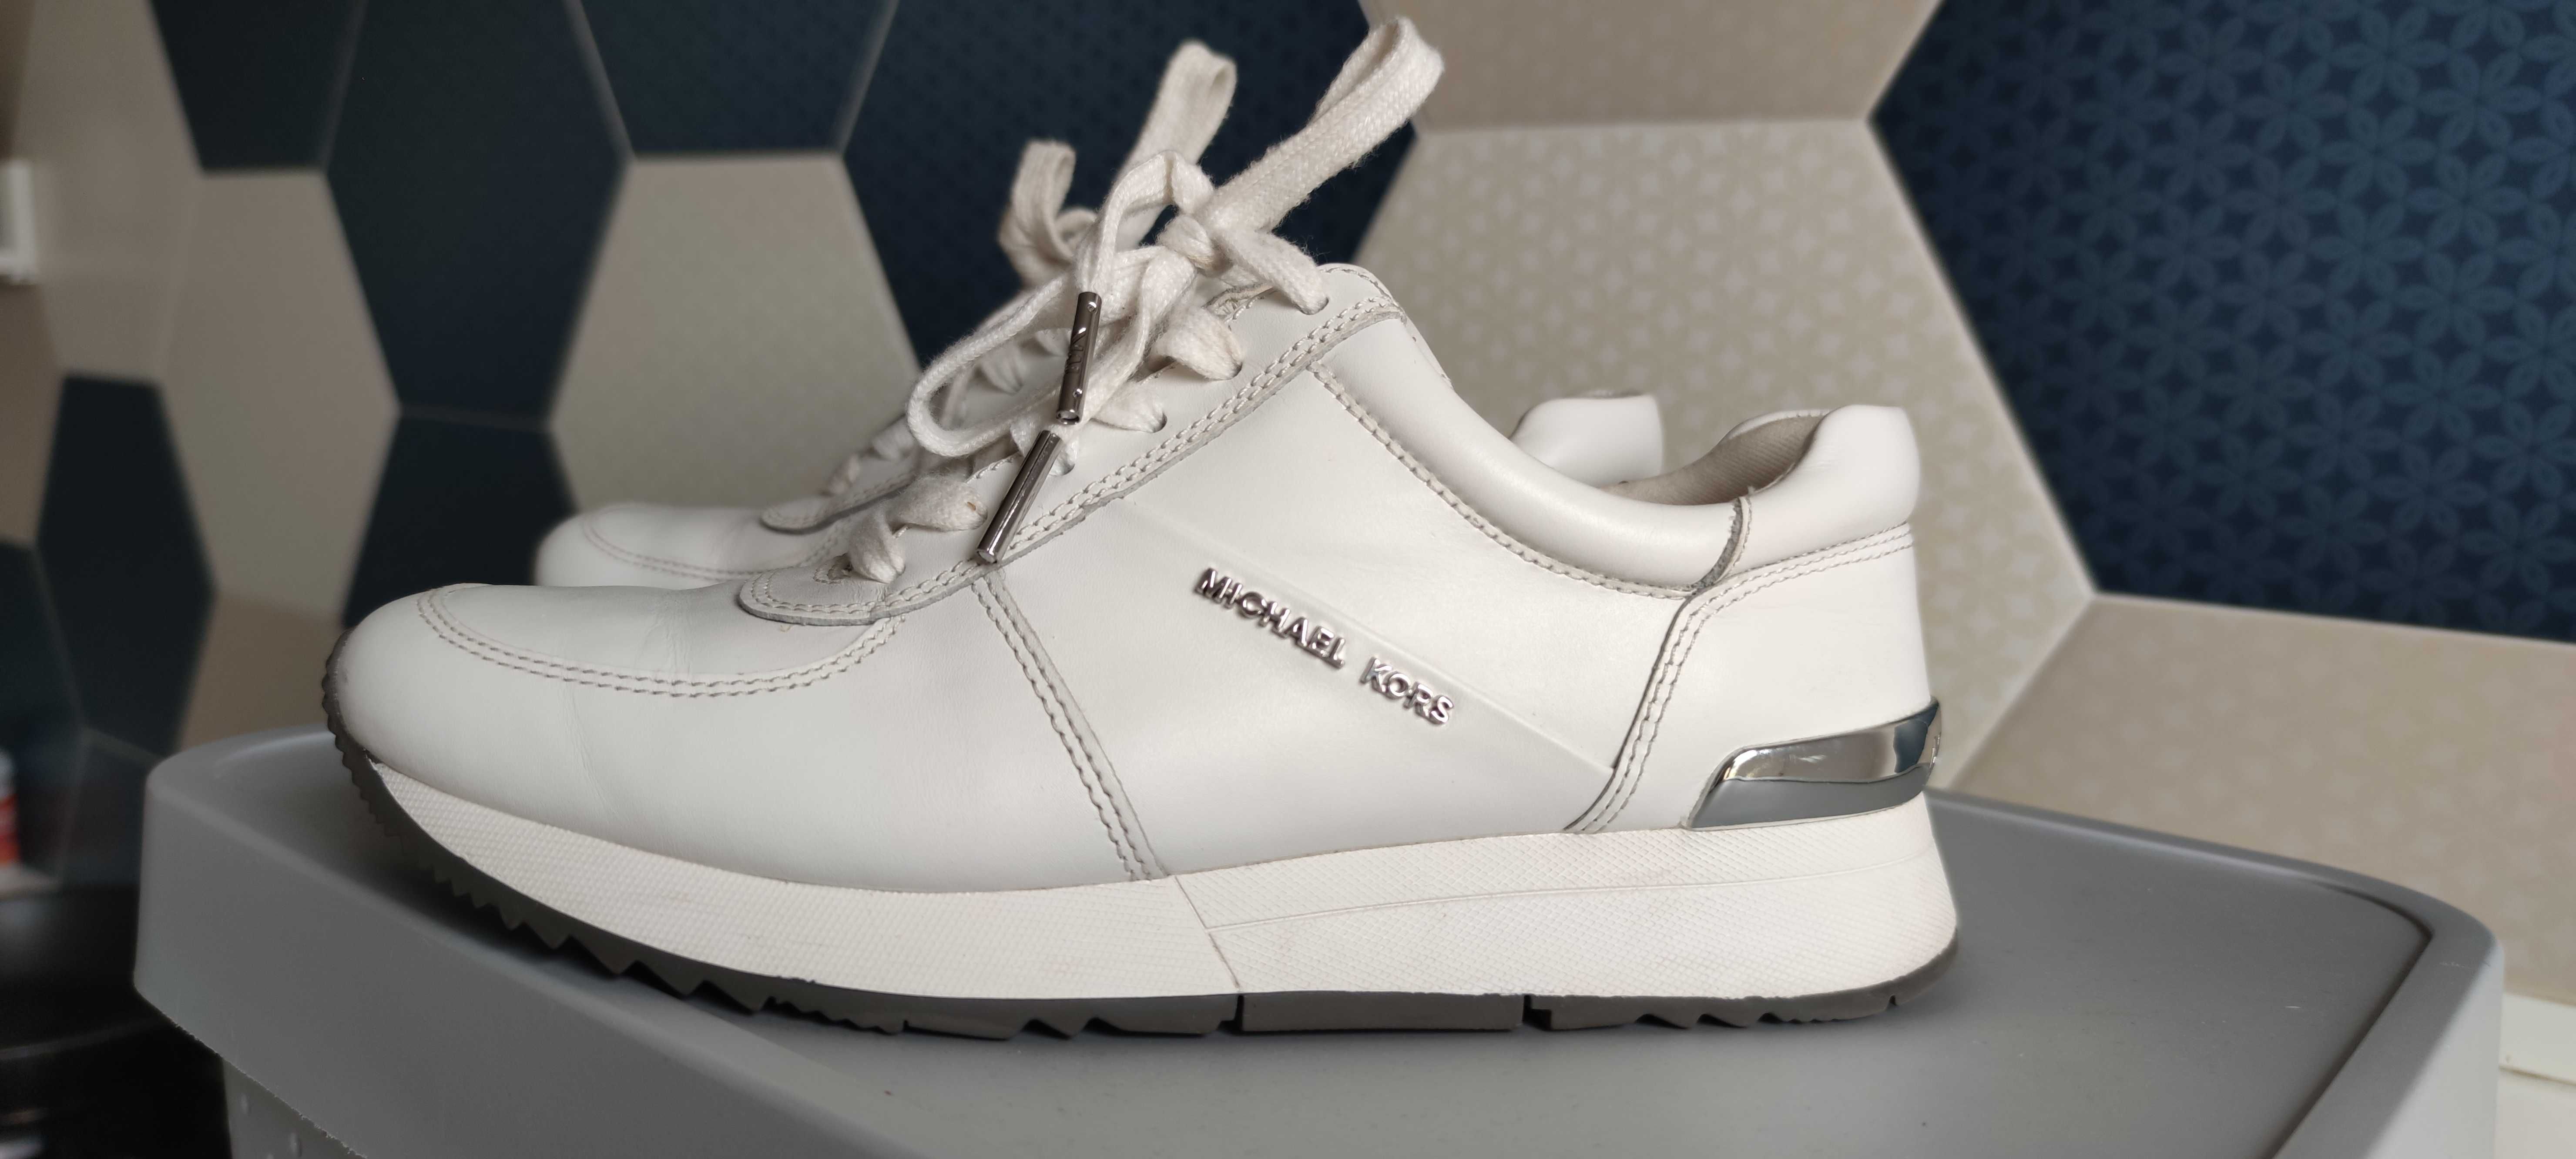 Buty sneakersy Michael Kors białe skórzane 35.5